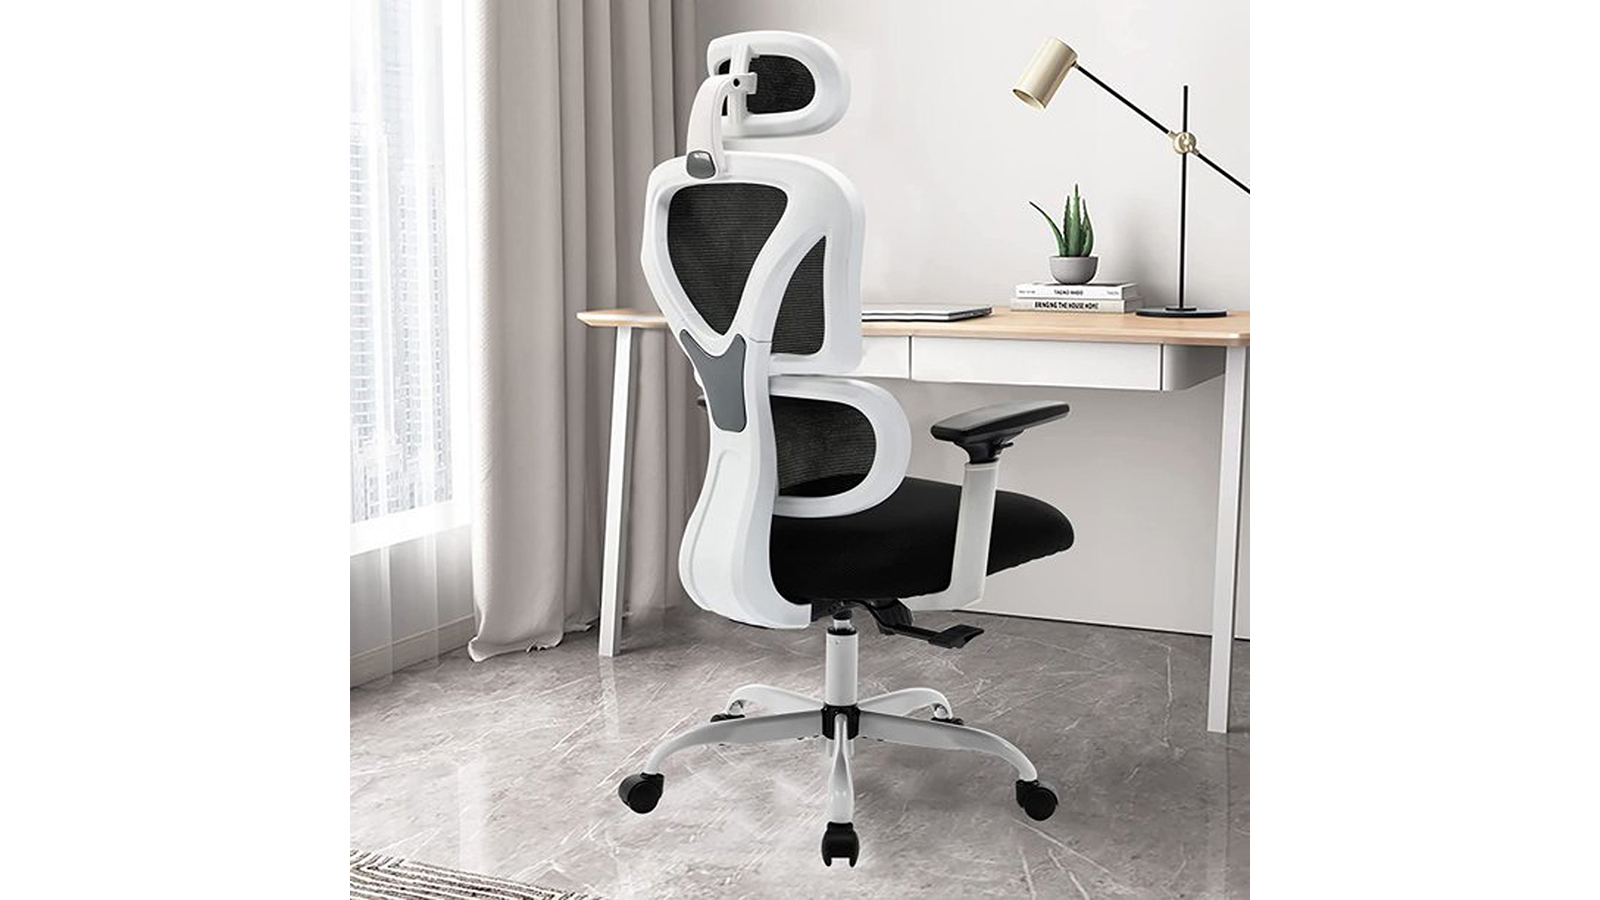 KERDOM FelixKing Ergonomic Chair: for Hard Floor